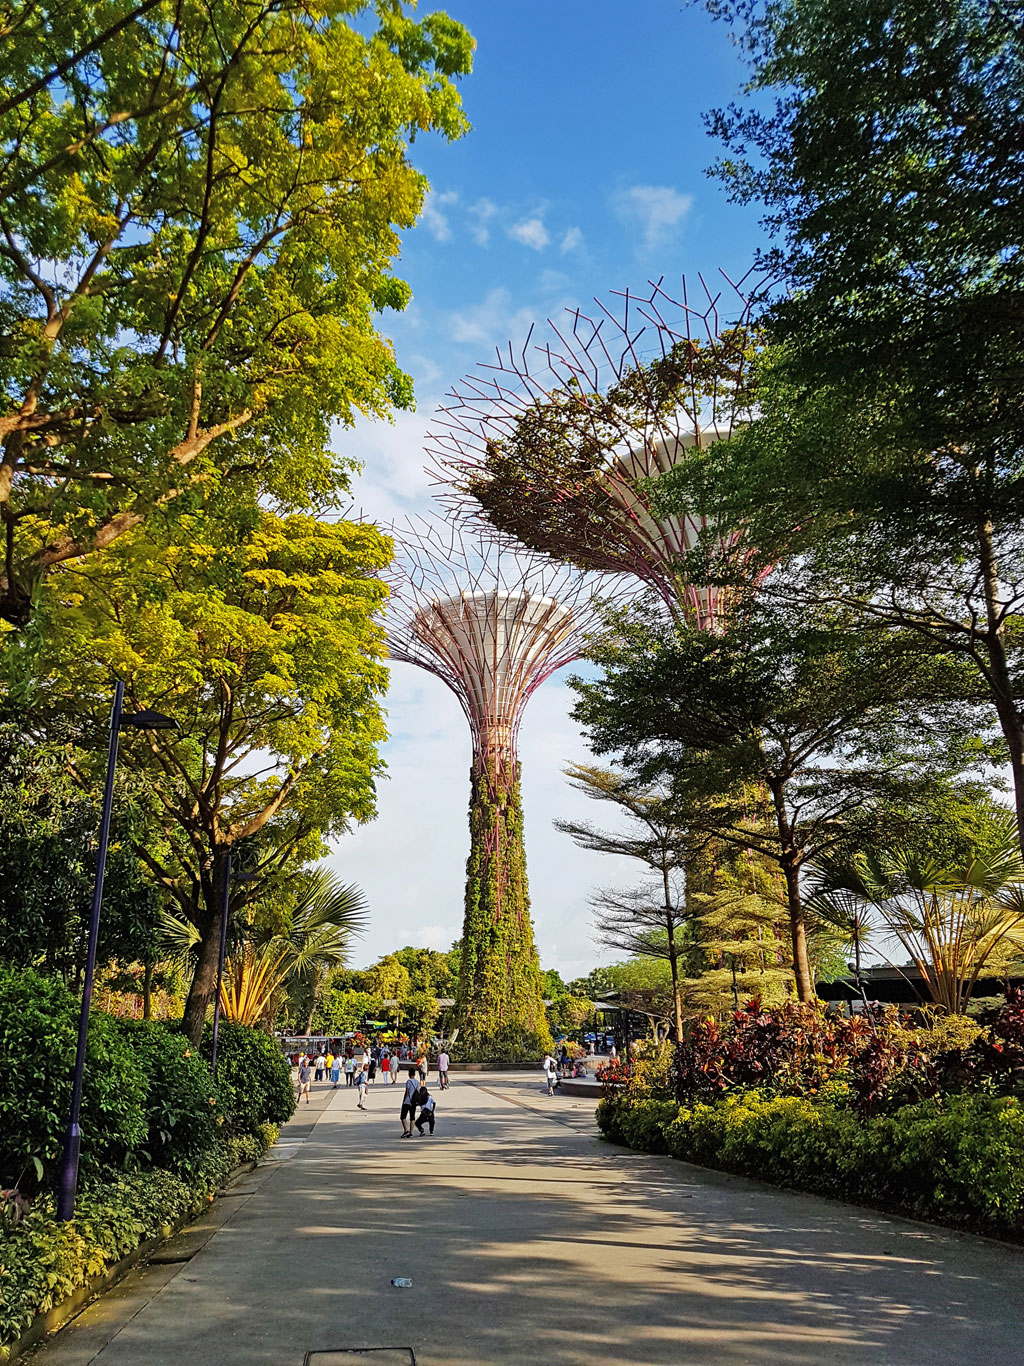 Singapura - Gardens by the Bay